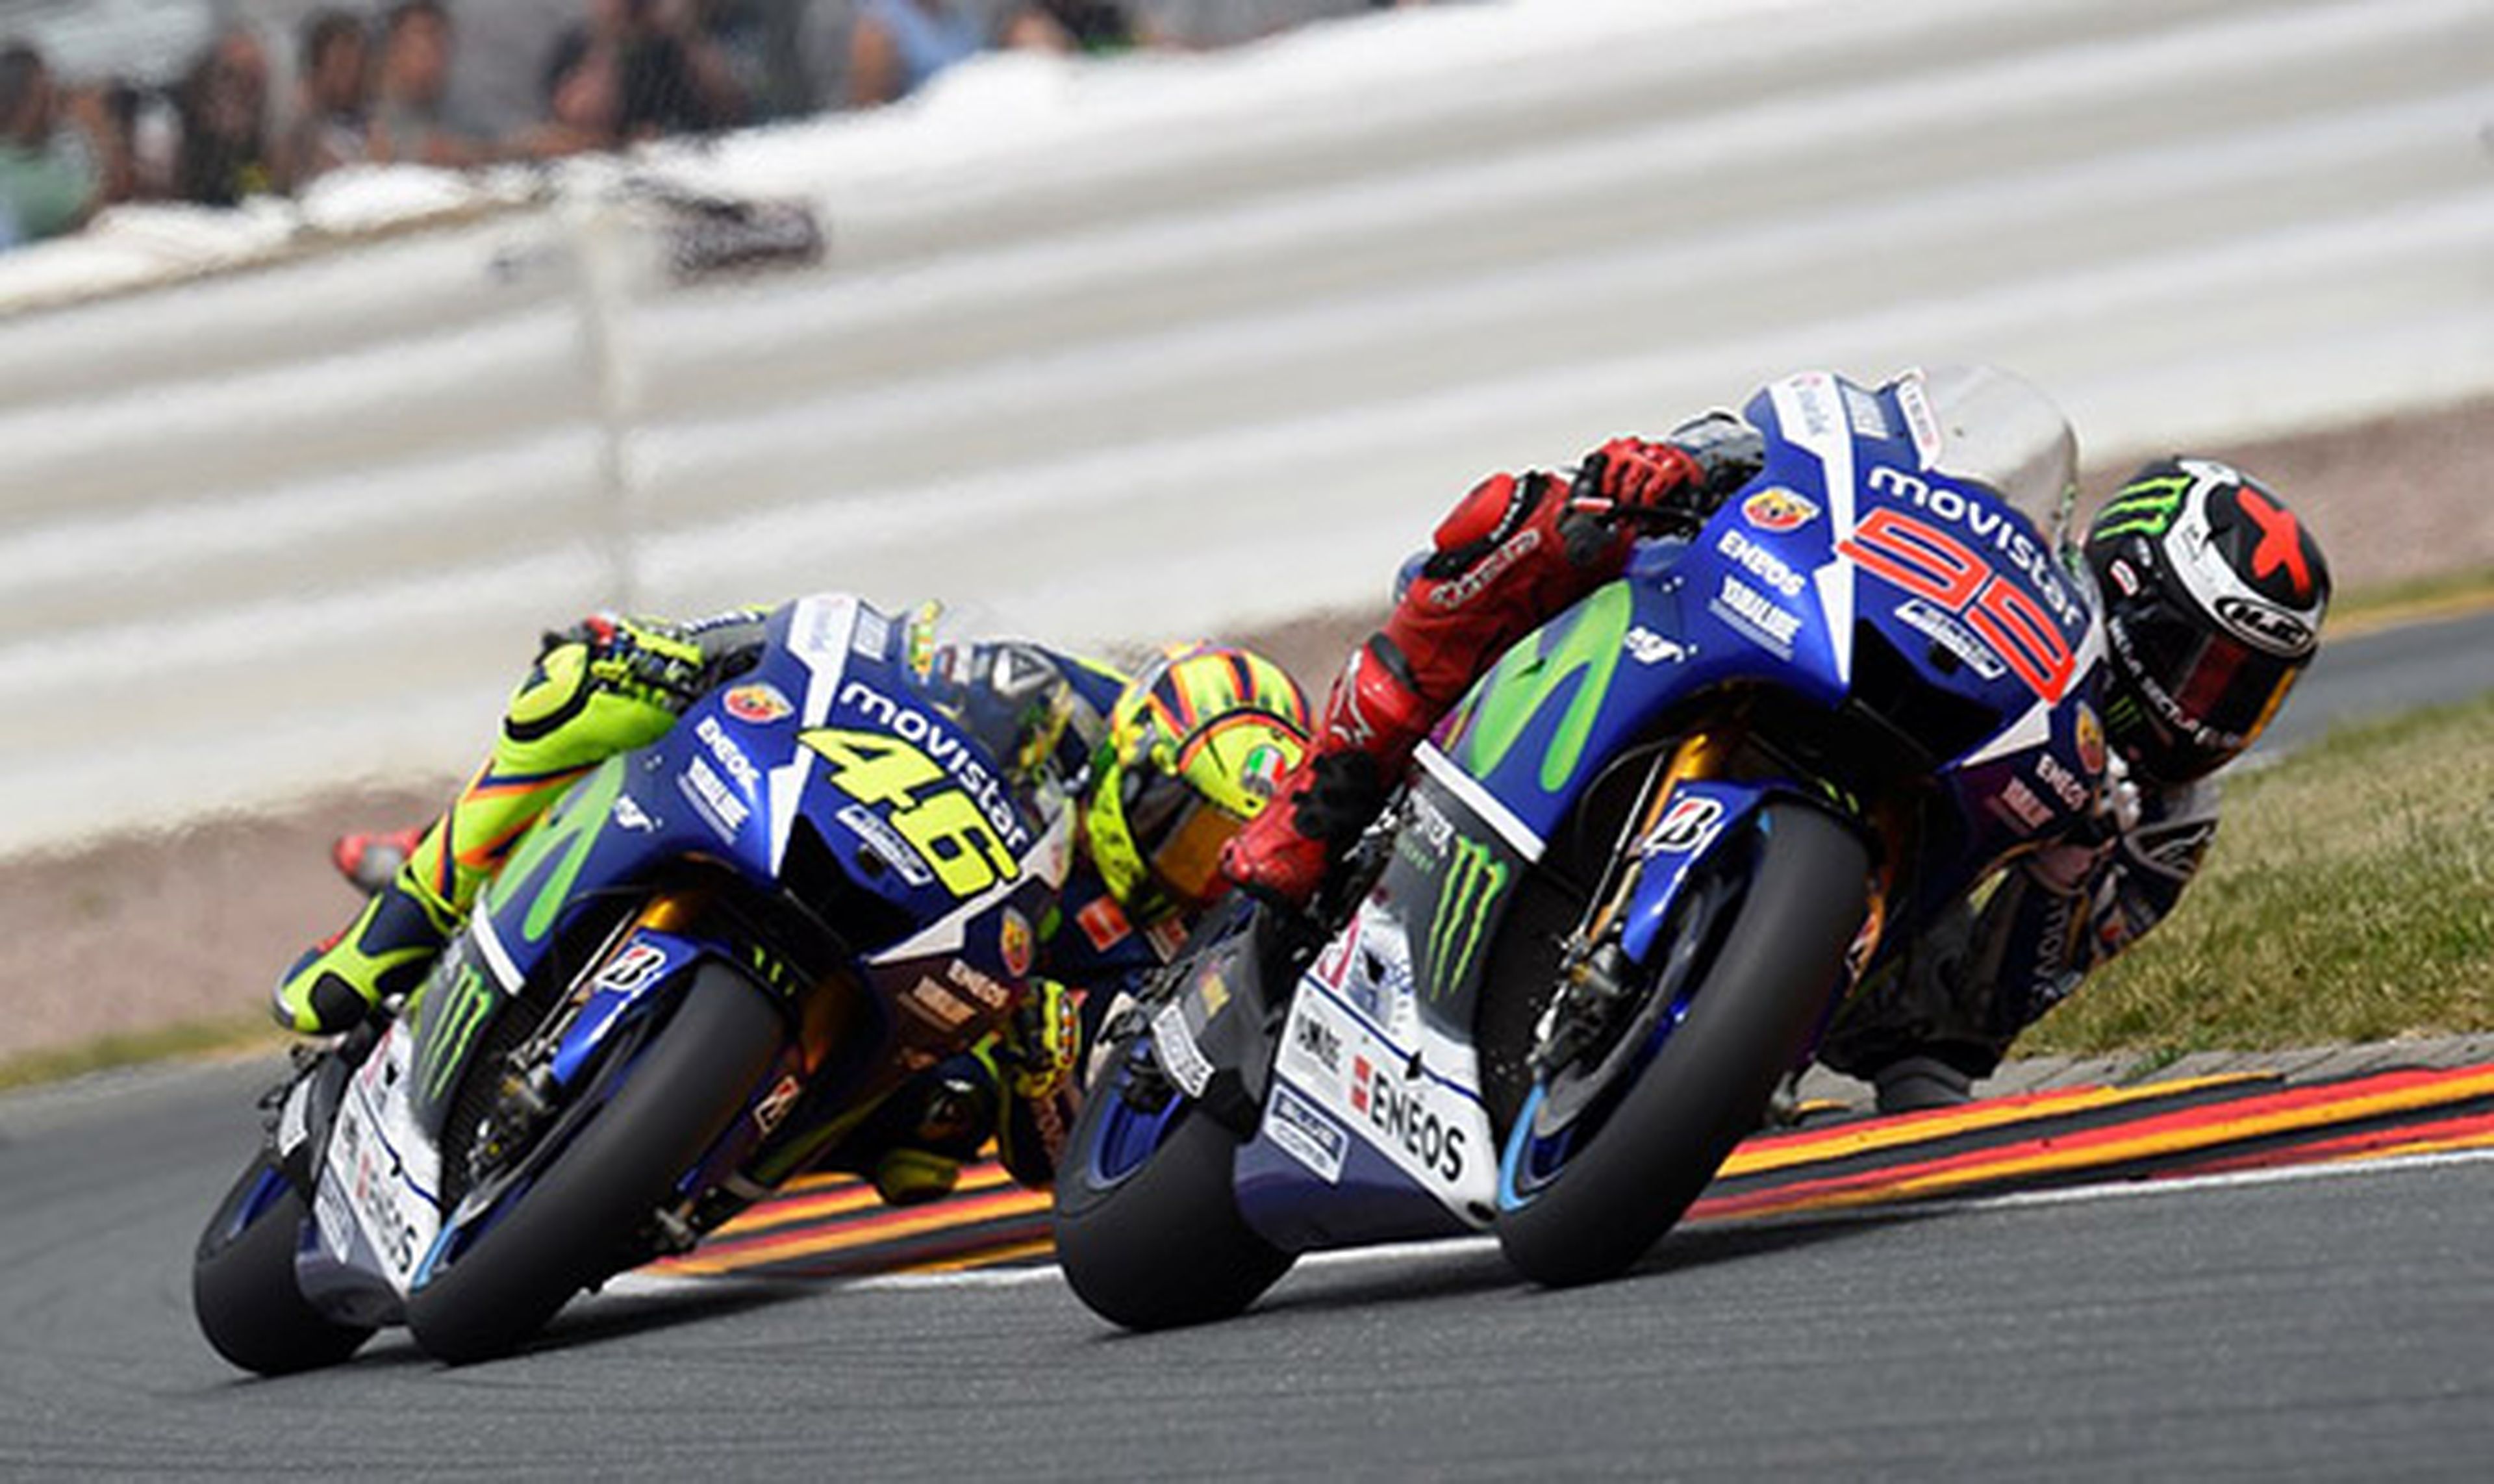 Rossi vs Lorenzo: 7 carreras para decidir al campeón